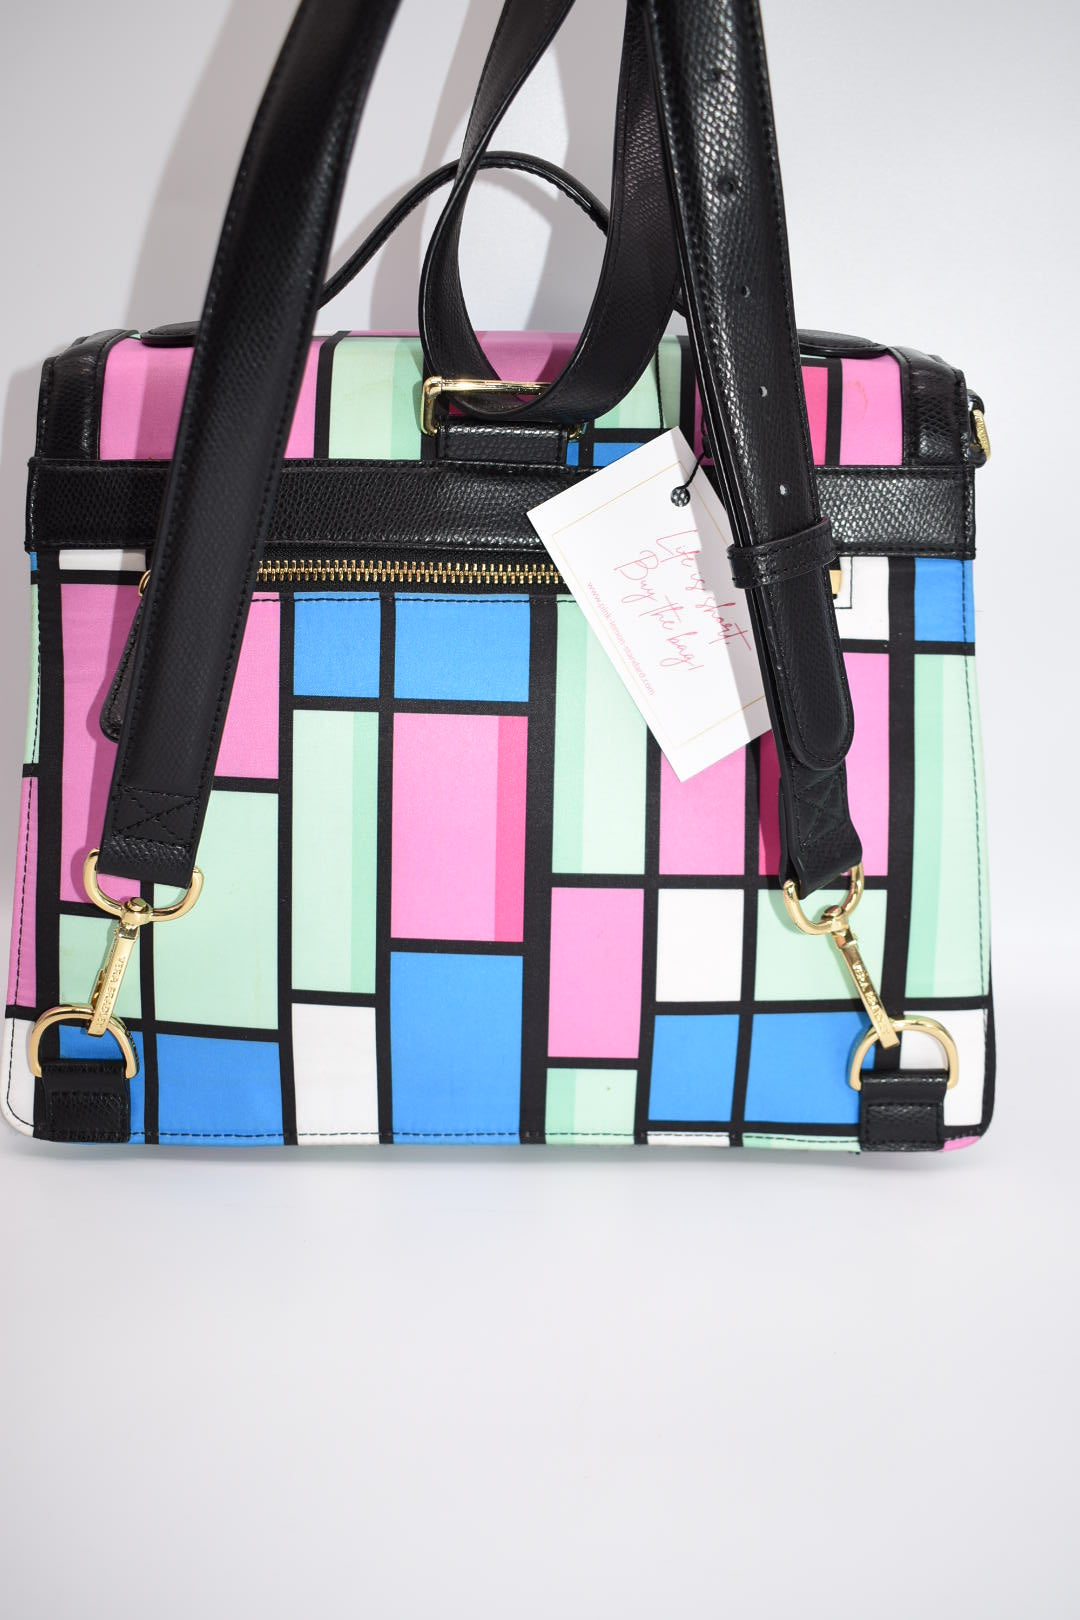 Vera Bradley VIVA LA VERA Diaper Bag EUC Colorful Bold Vibrant Floral